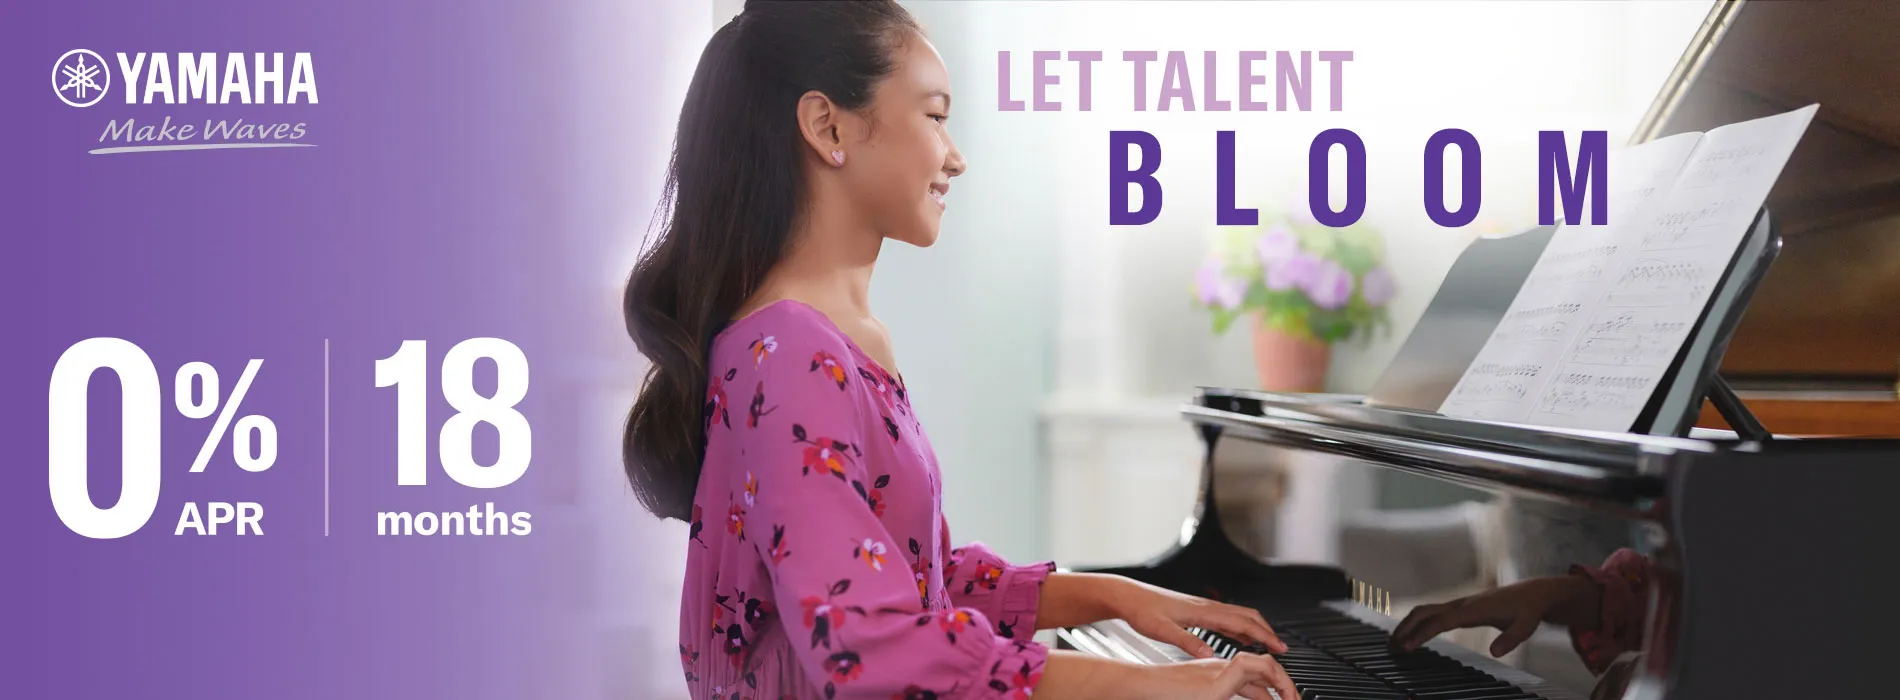 Let talent bloom! Yamaha Spring Sale.